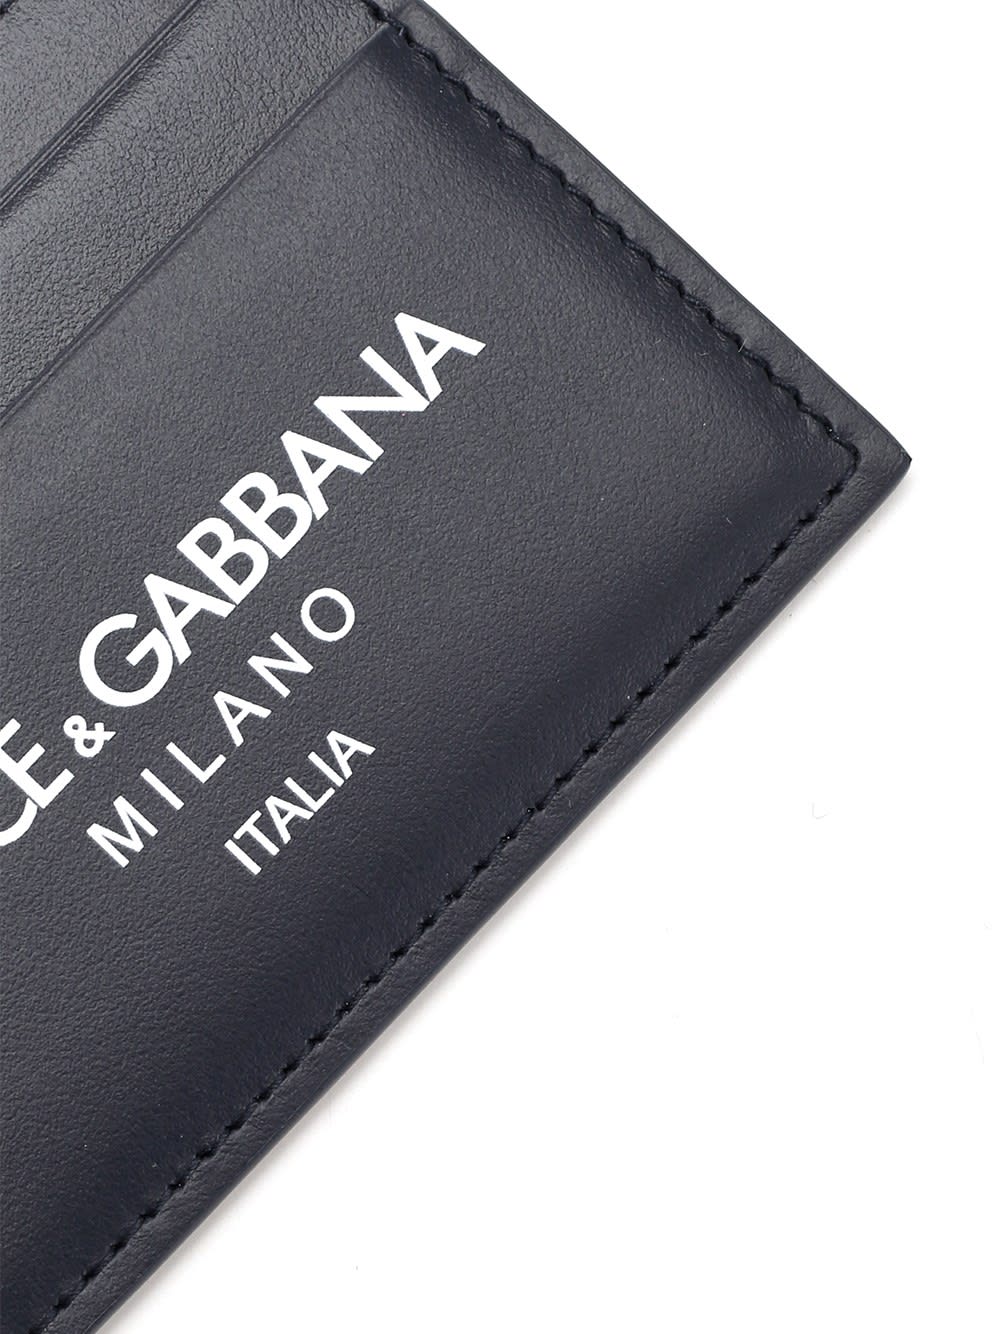 Shop Dolce & Gabbana Calfskin Card Case In Blu